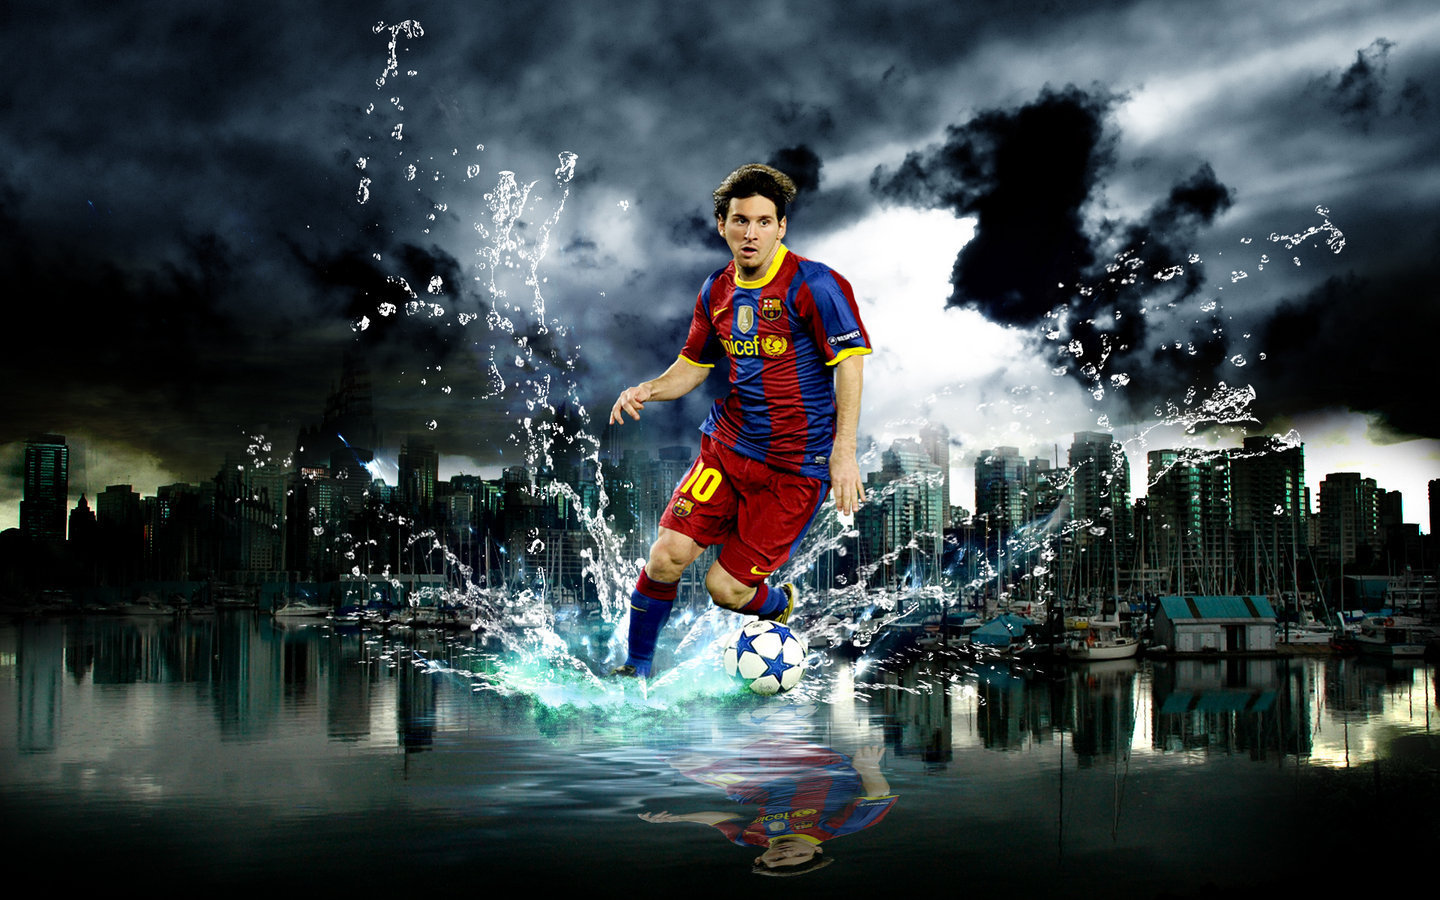 Lionel Messi là một trong những cầu thủ vĩ đại nhất trong lịch sử bóng đá. Với những pha bóng kỹ thuật đẳng cấp và sức mạnh vượt trội, anh đã trở thành biểu tượng của sự tự tin và ước mơ. Hãy cùng chiêm ngưỡng hình ảnh của Messi để cảm nhận được tài năng và sự nghiệp thành công của cầu thủ này.